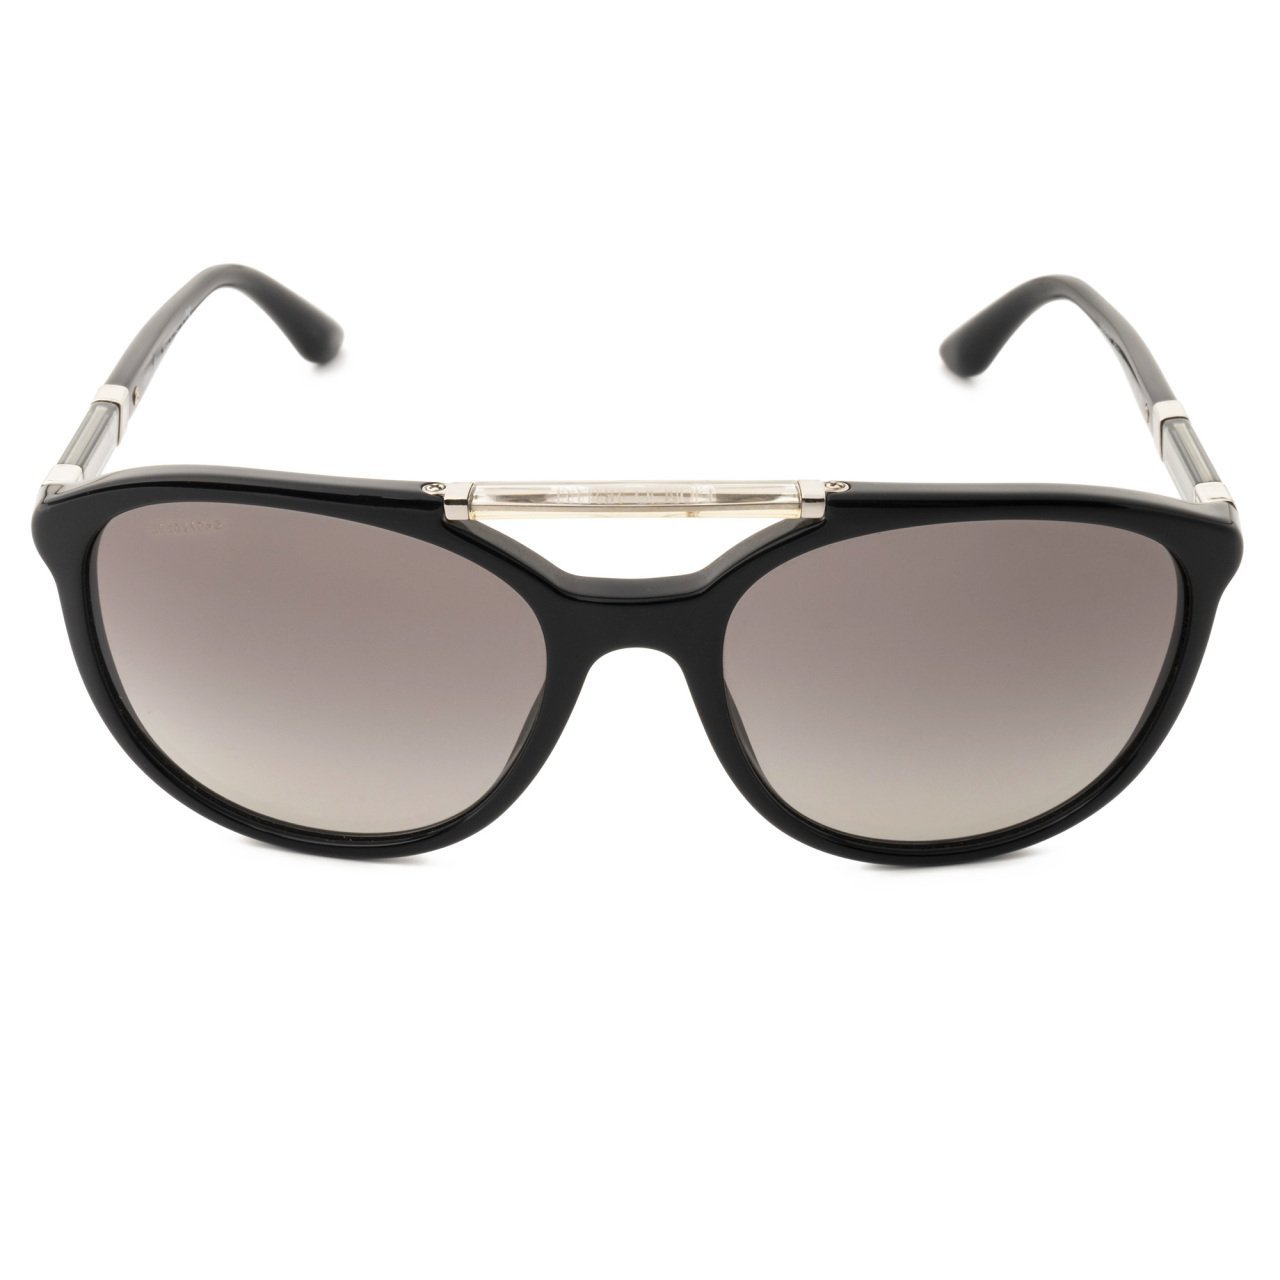 Giorgio Armani AR8057 Women's Sunglasses